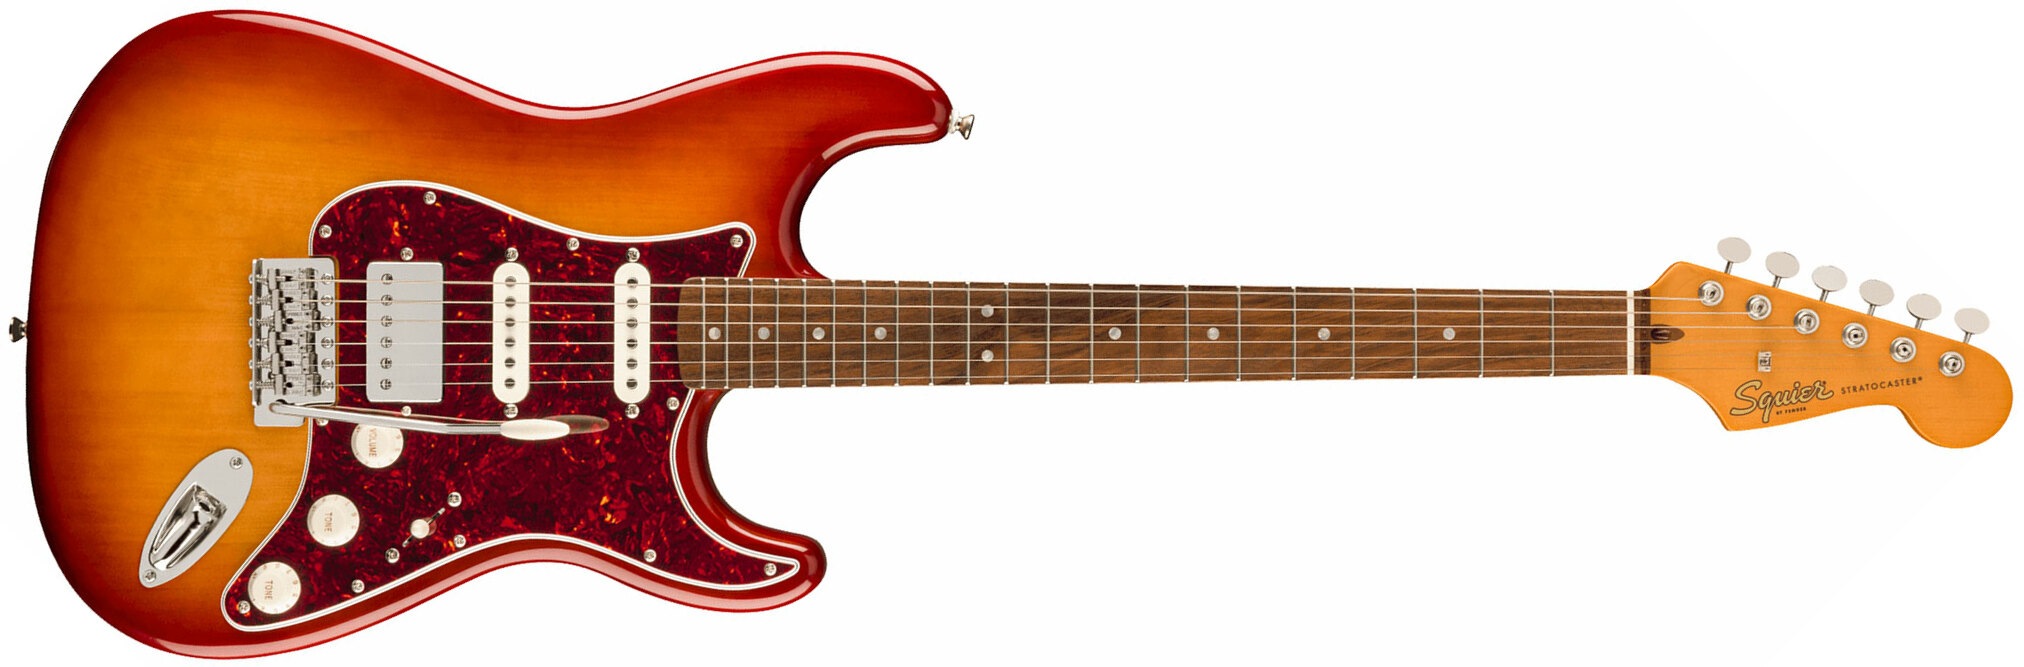 Squier Strat 60s Classic Vibe Ltd Hss Trem Lau - Sienna Sunburst - Guitarra eléctrica con forma de str. - Main picture